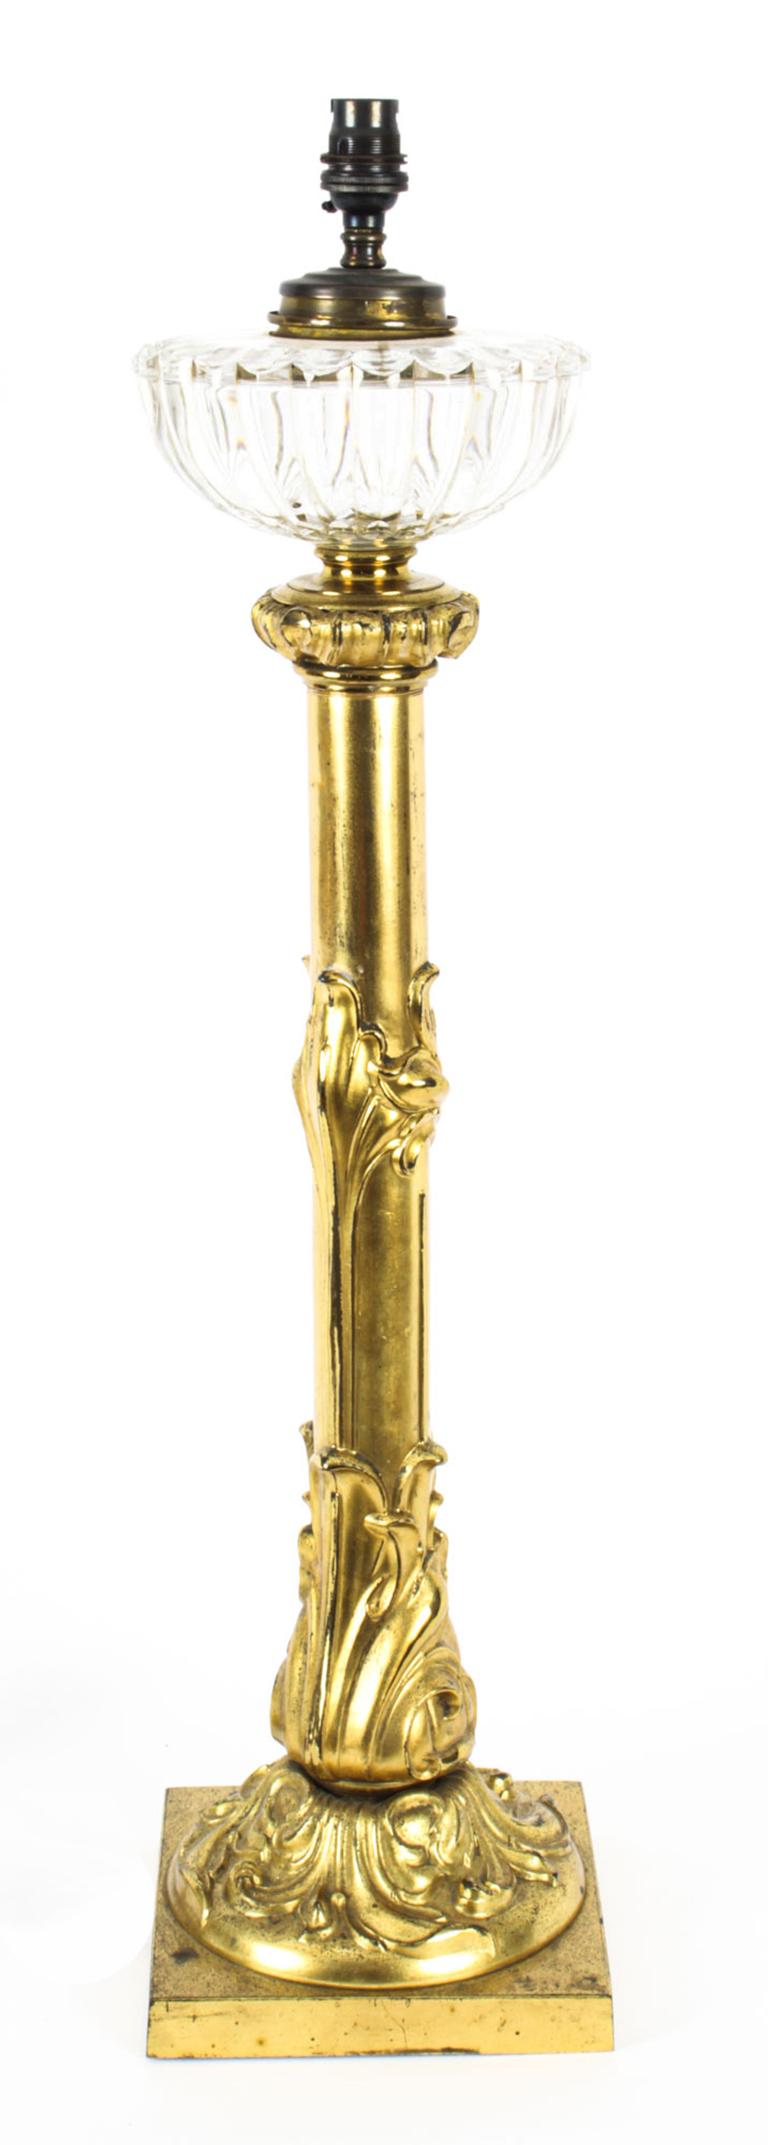 Une grande, 72cm, belle lampe de table anglaise William IV, vers 1835 en date.

Cette lampe remarquable est dotée d'un récepteur en verre d'origine, d'un design classique William IV et a été convertie à partir d'une lampe à huile Palmer des années